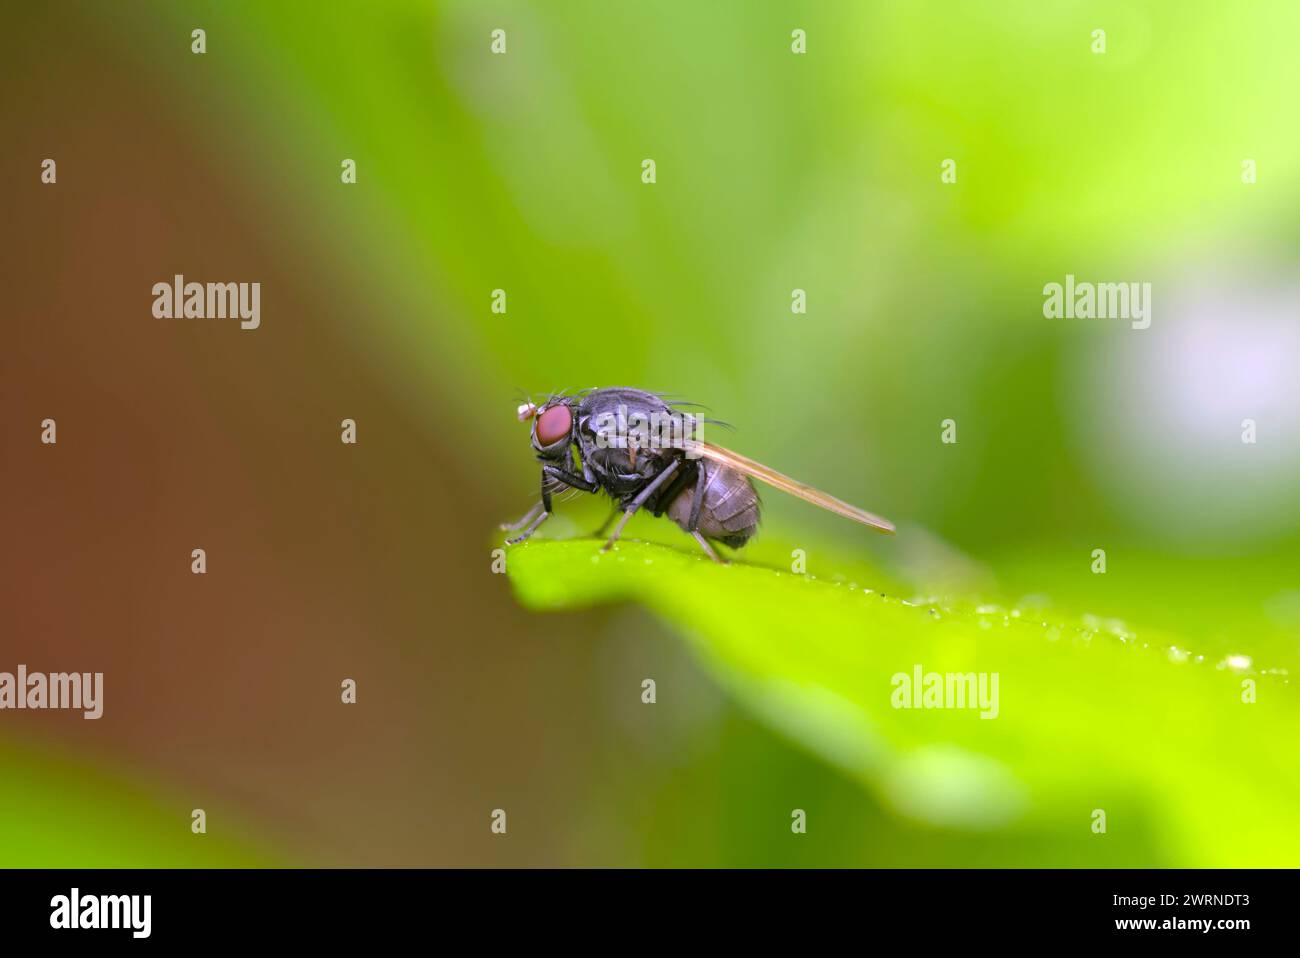 Single Fly assis sur une feuille, nature, biodiversité, photographie d'insectes, macro Banque D'Images